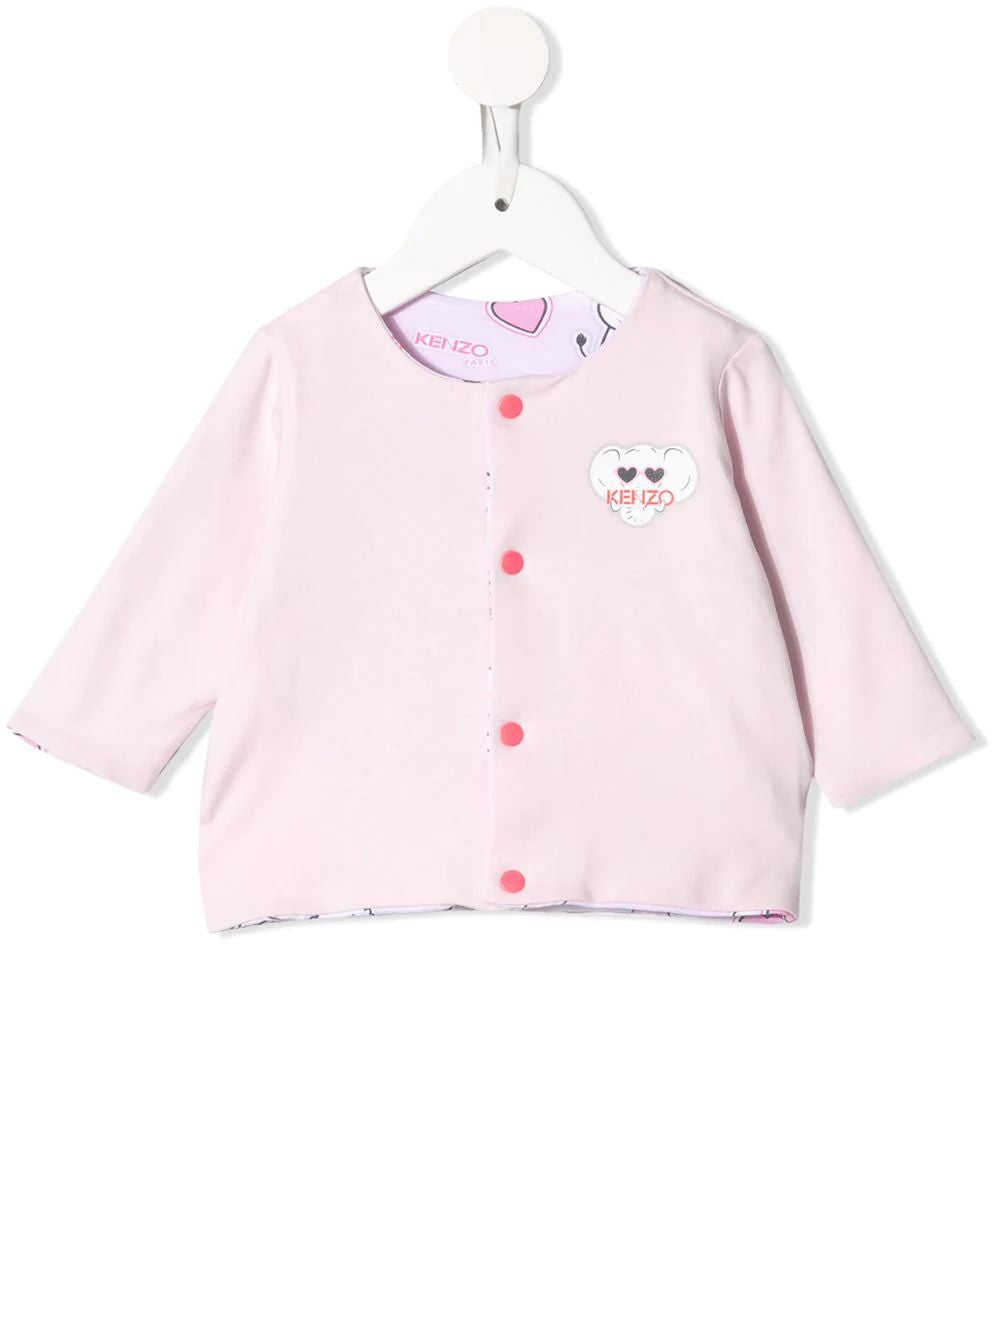 Baby Girls Light Pink Reversible Cardigan